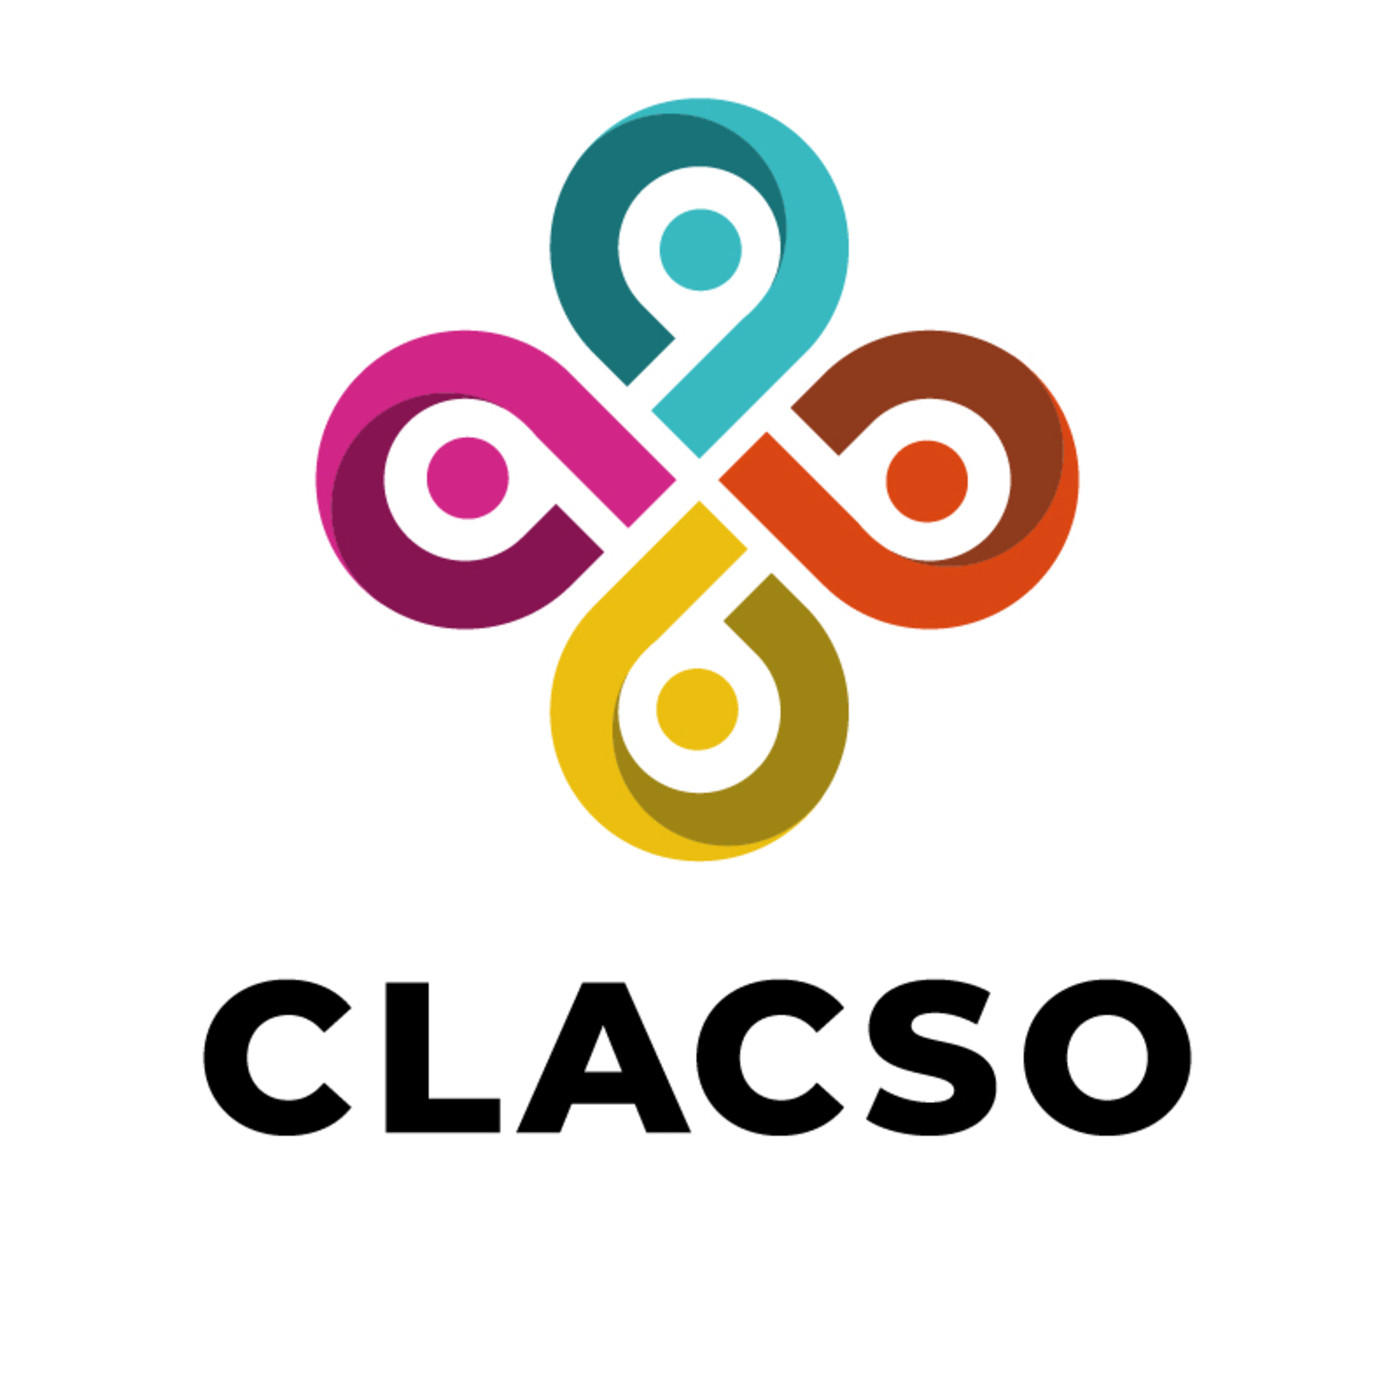 Editorial Clacso